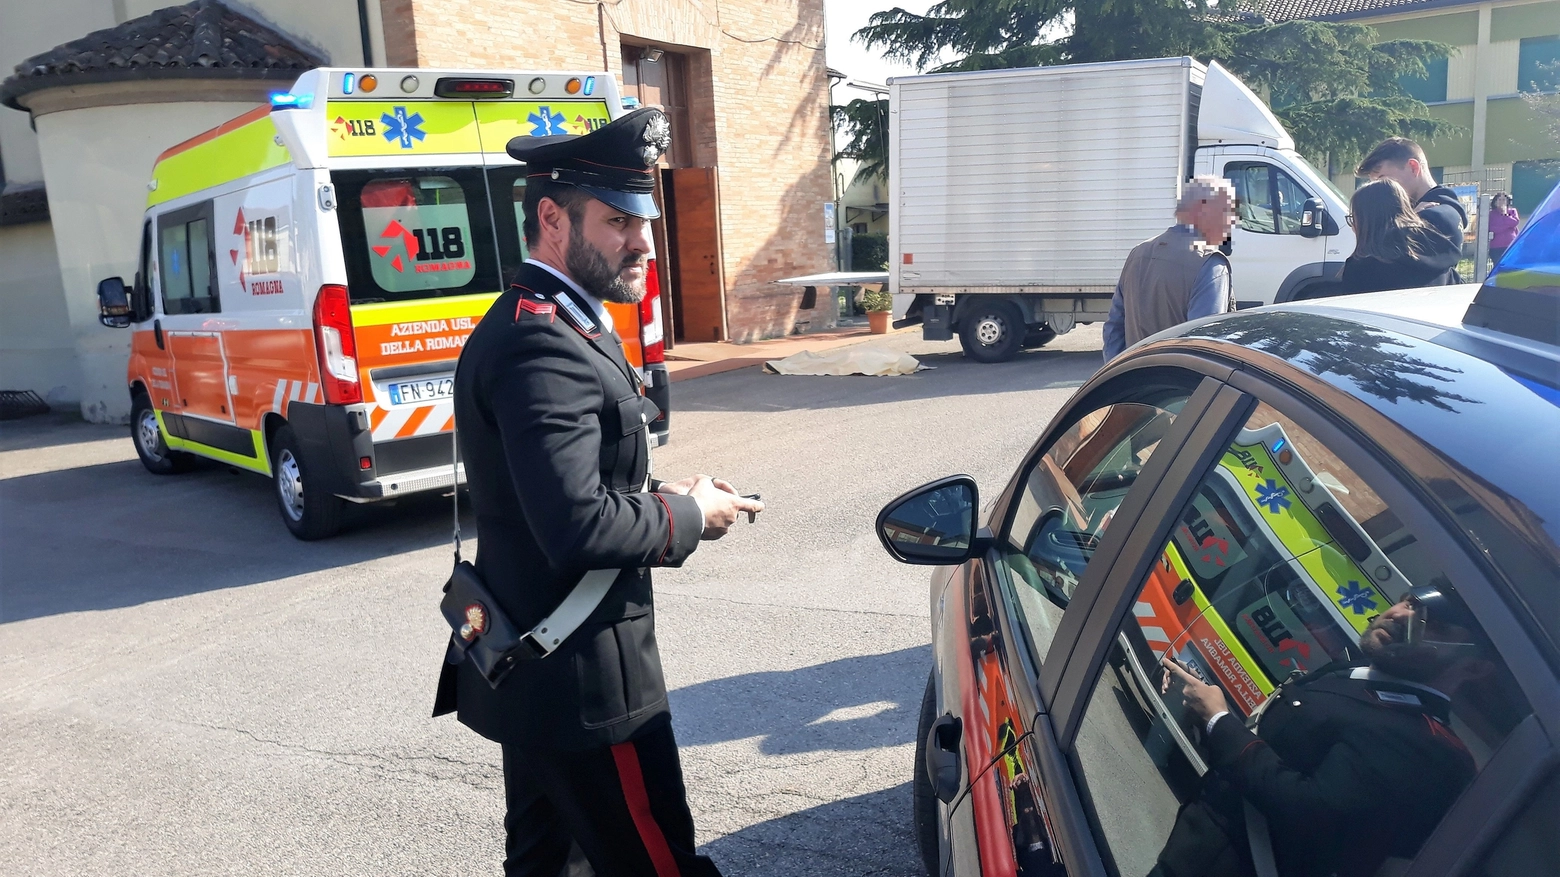 Cade e muore, sul posto carabinieri e polizia locale Bassa Romagna (Scardovi)